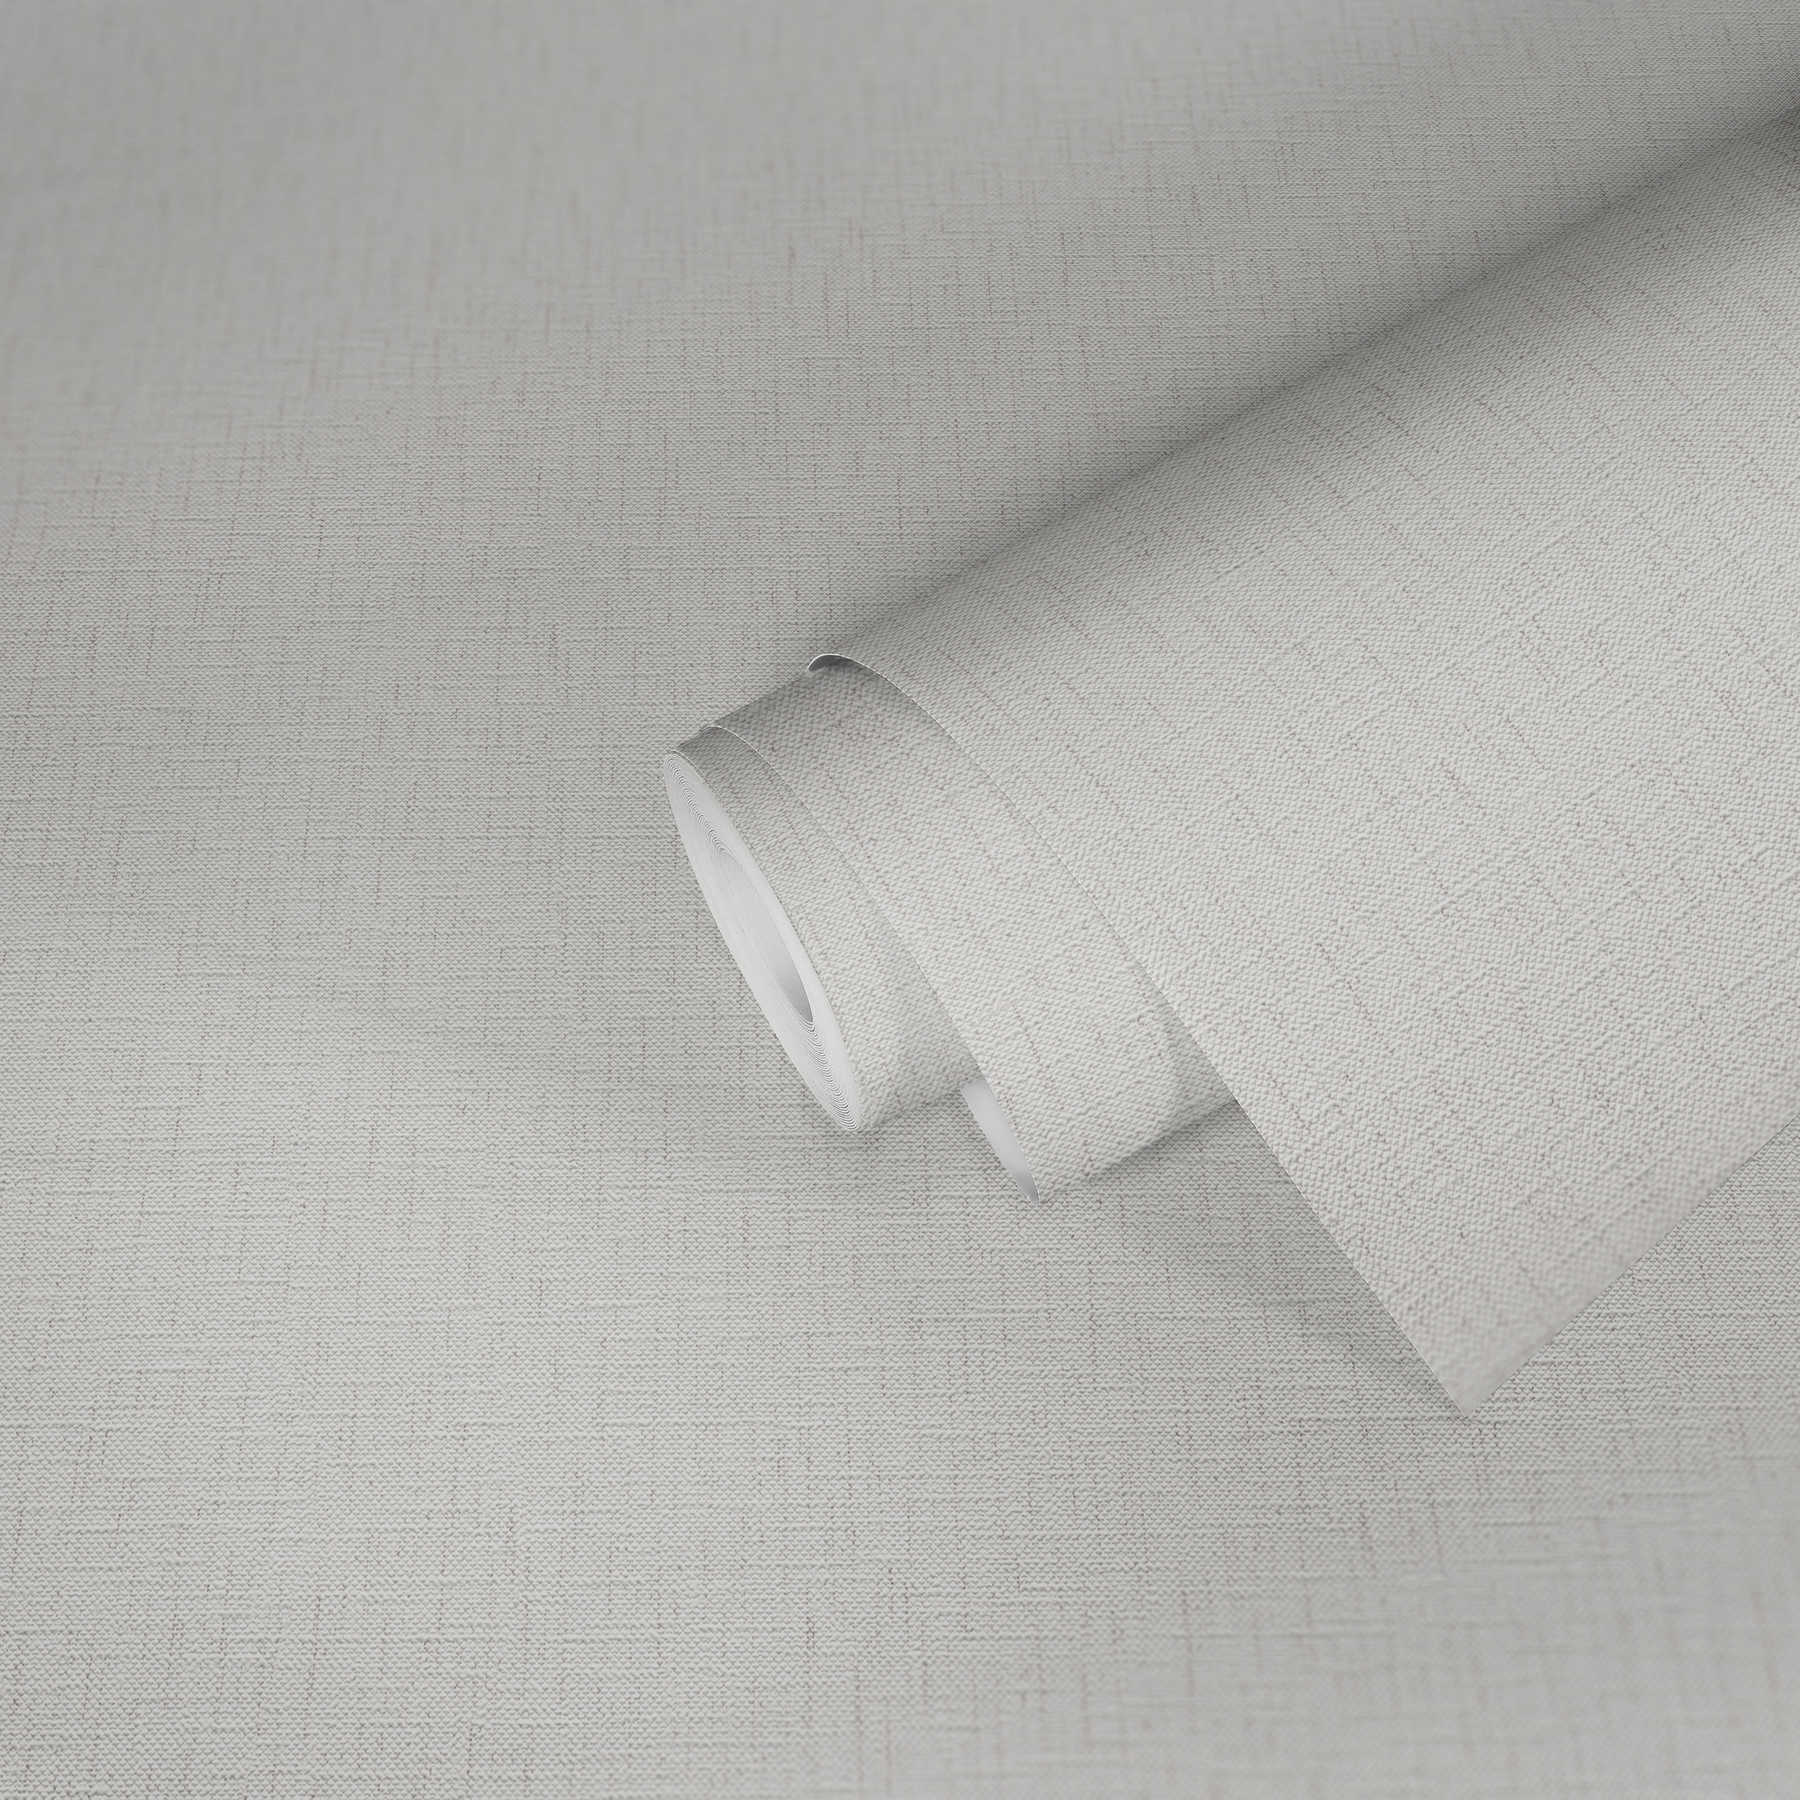             Papel pintado de aspecto textil con coloración moteada - gris, blanco
        